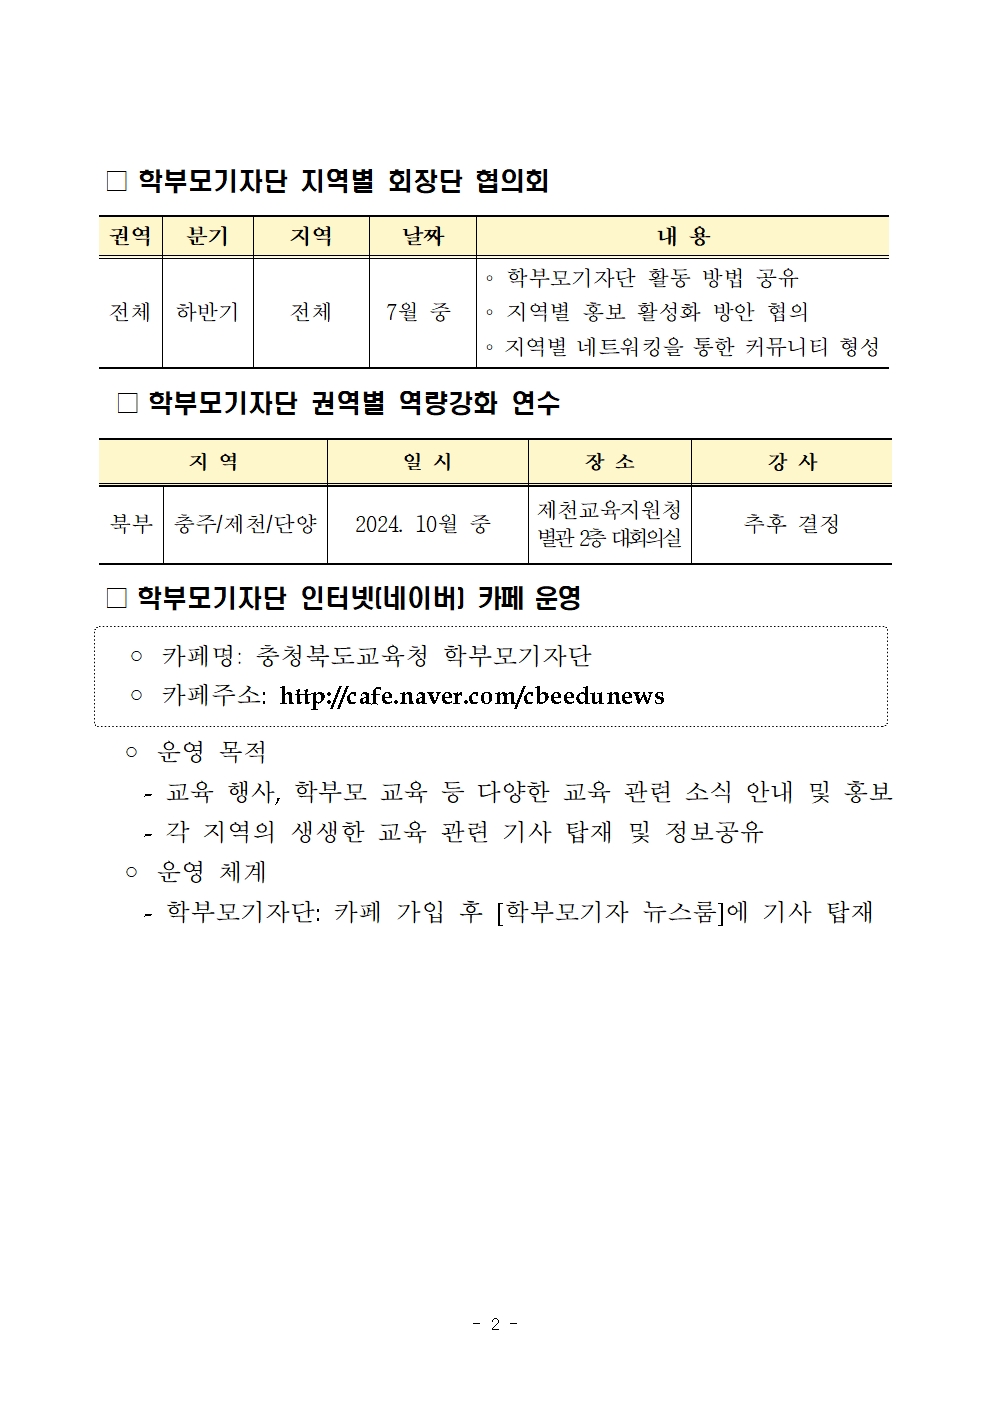 충청북도충주교육지원청 행정과_2024. 학부모기자단 운영 계획002